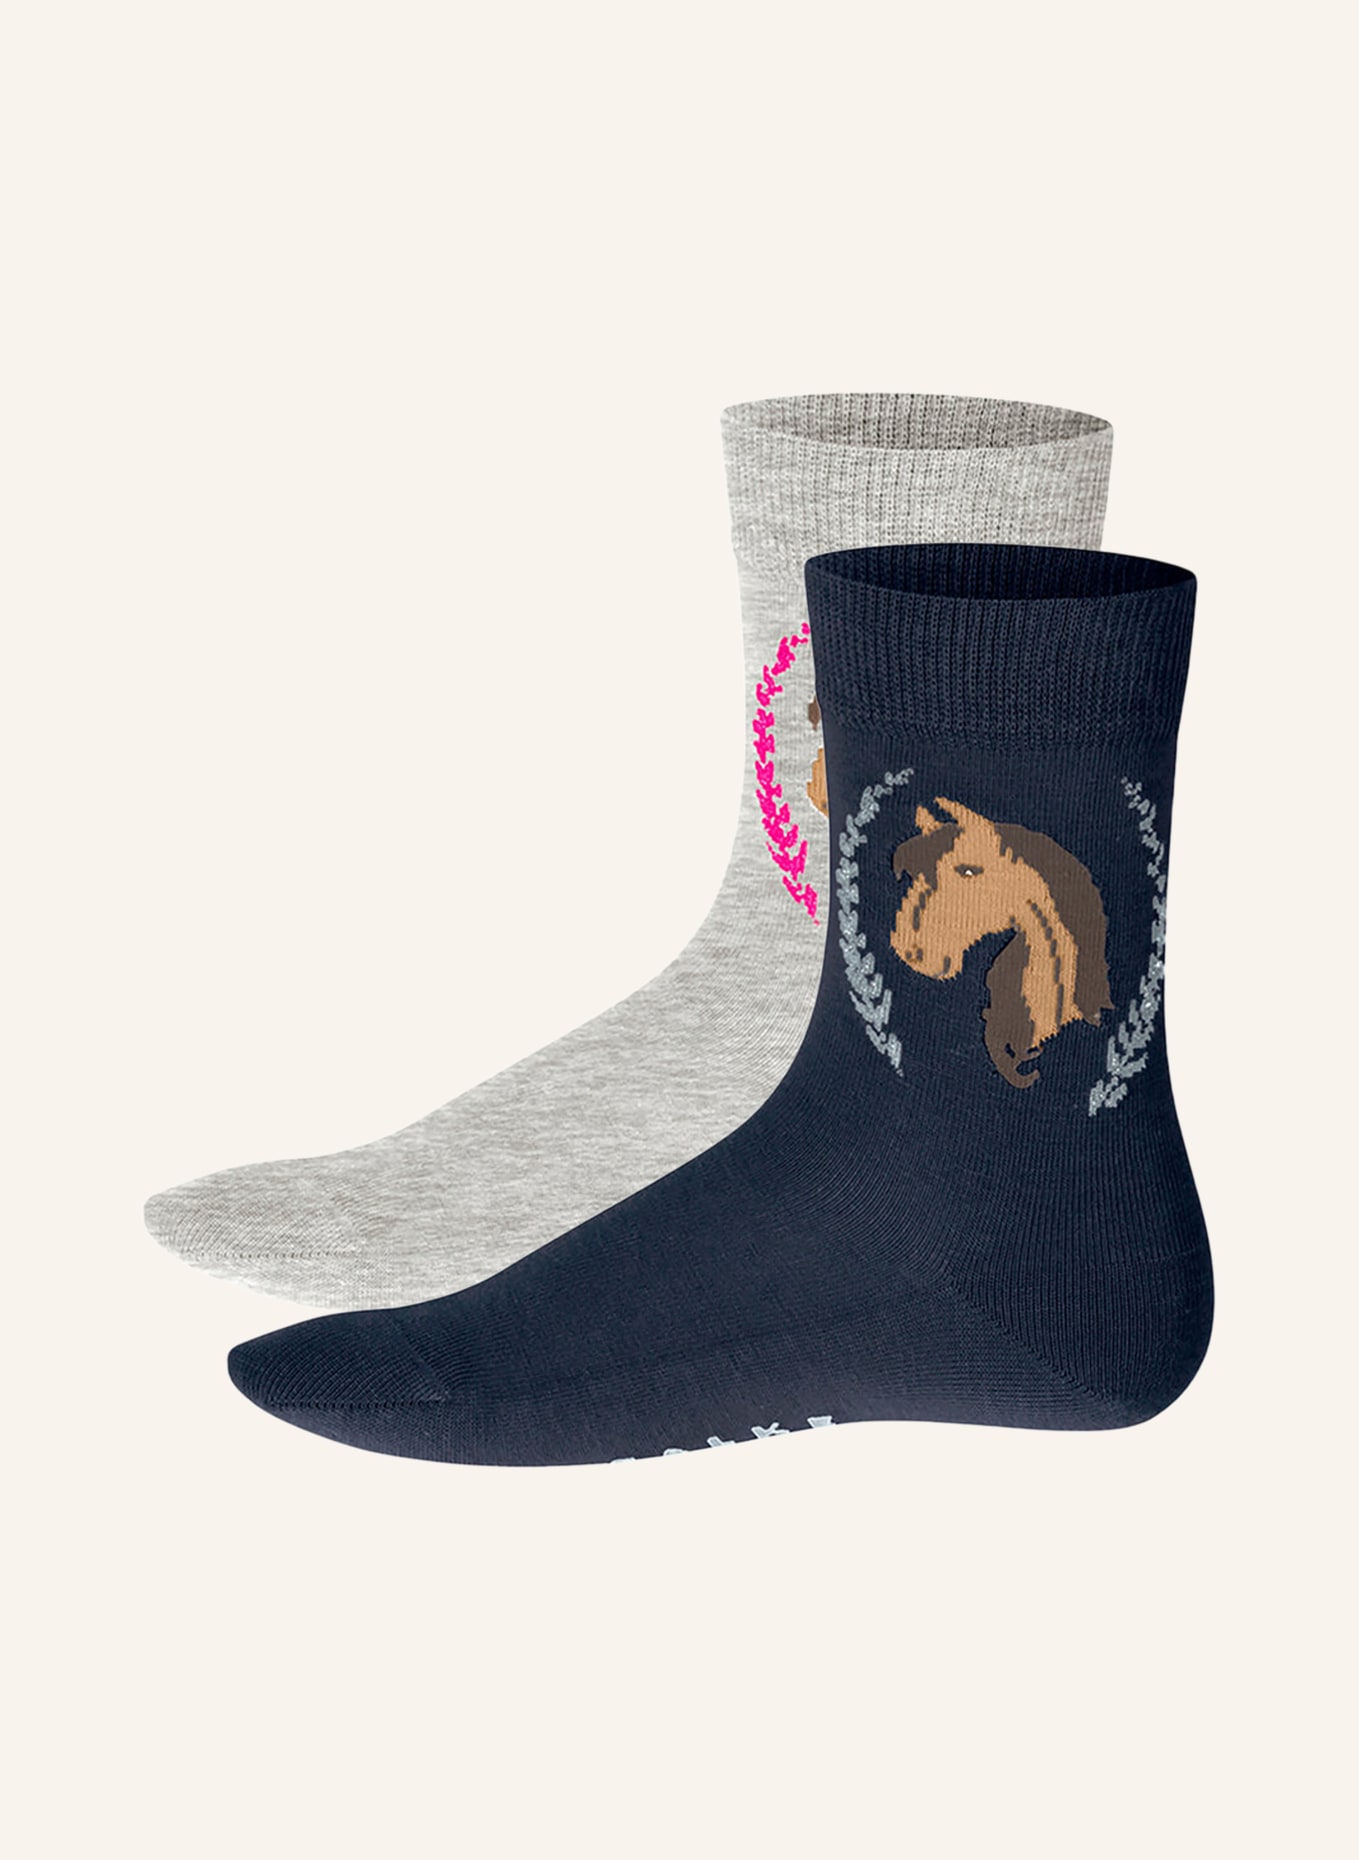 FALKE 2er-Pack Socken HORSE, Farbe: 0010 SORTIMENT (Bild 1)